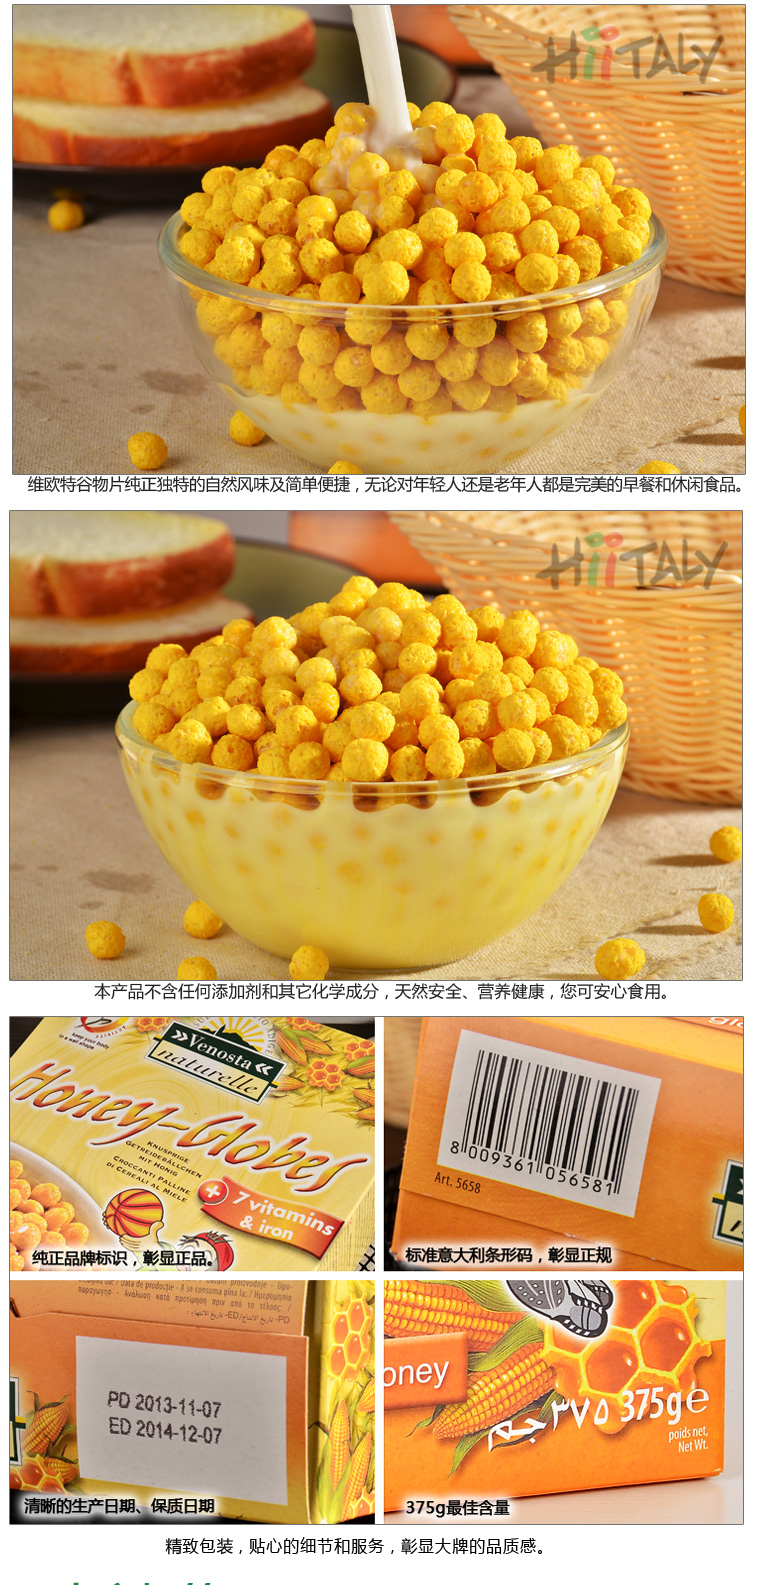 【淘最意大利】 维欧特 蜂蜜玉米球375g 即食早餐谷物麦片 营养食品 意大利进口